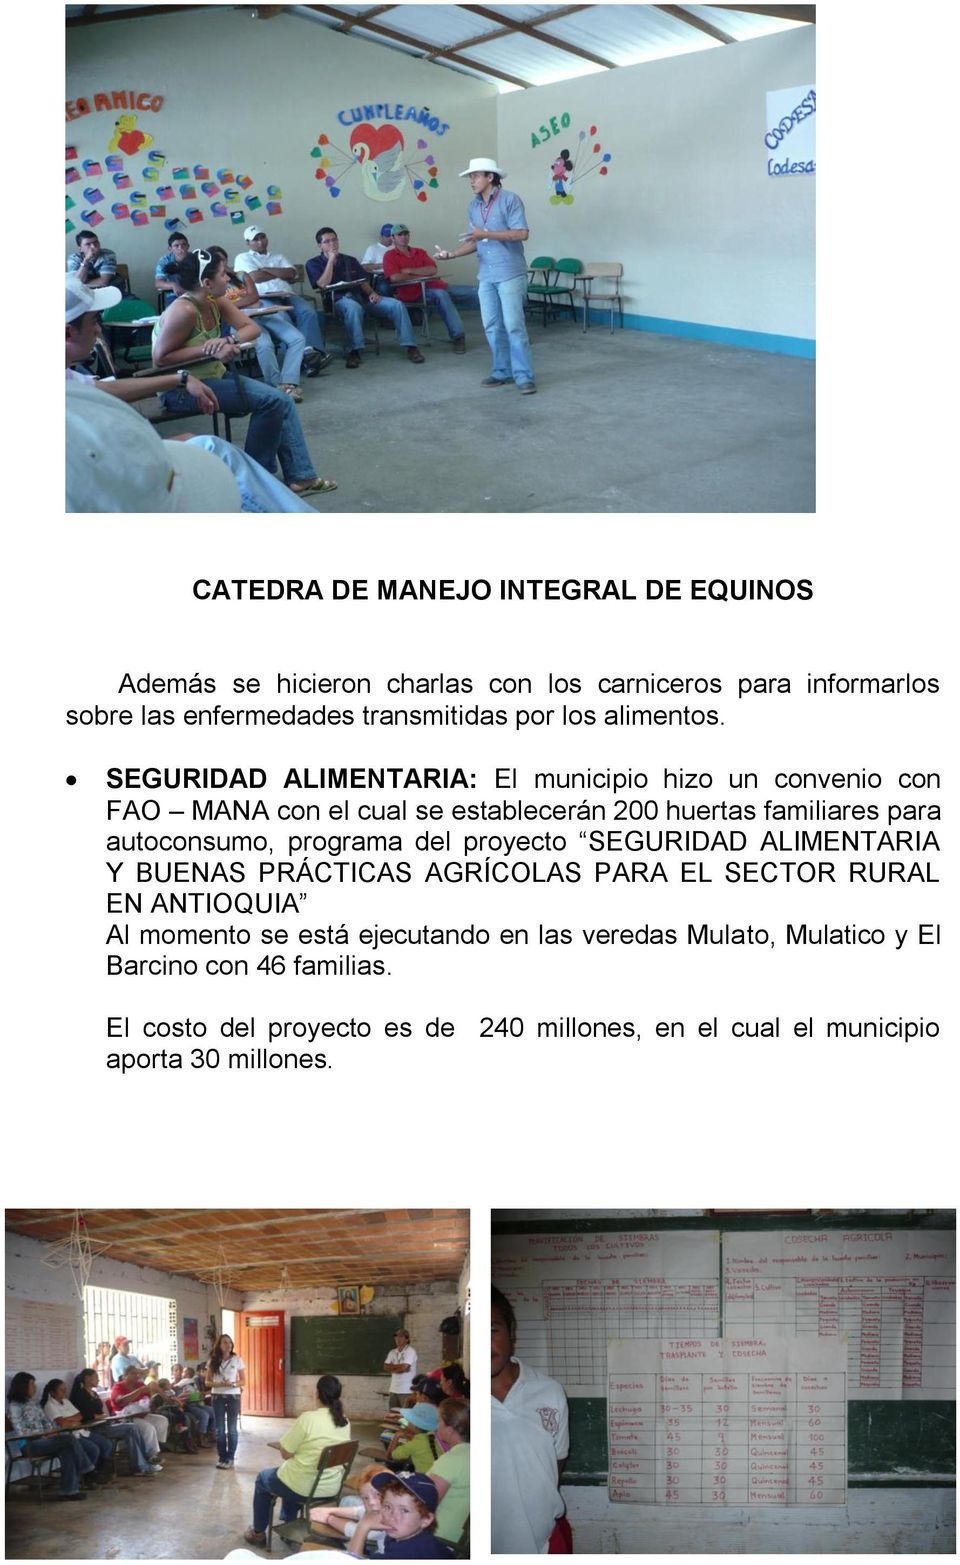 SEGURIDAD ALIMENTARIA: El municipio hizo un convenio con FAO MANA con el cual se establecerán 200 huertas familiares para autoconsumo, programa